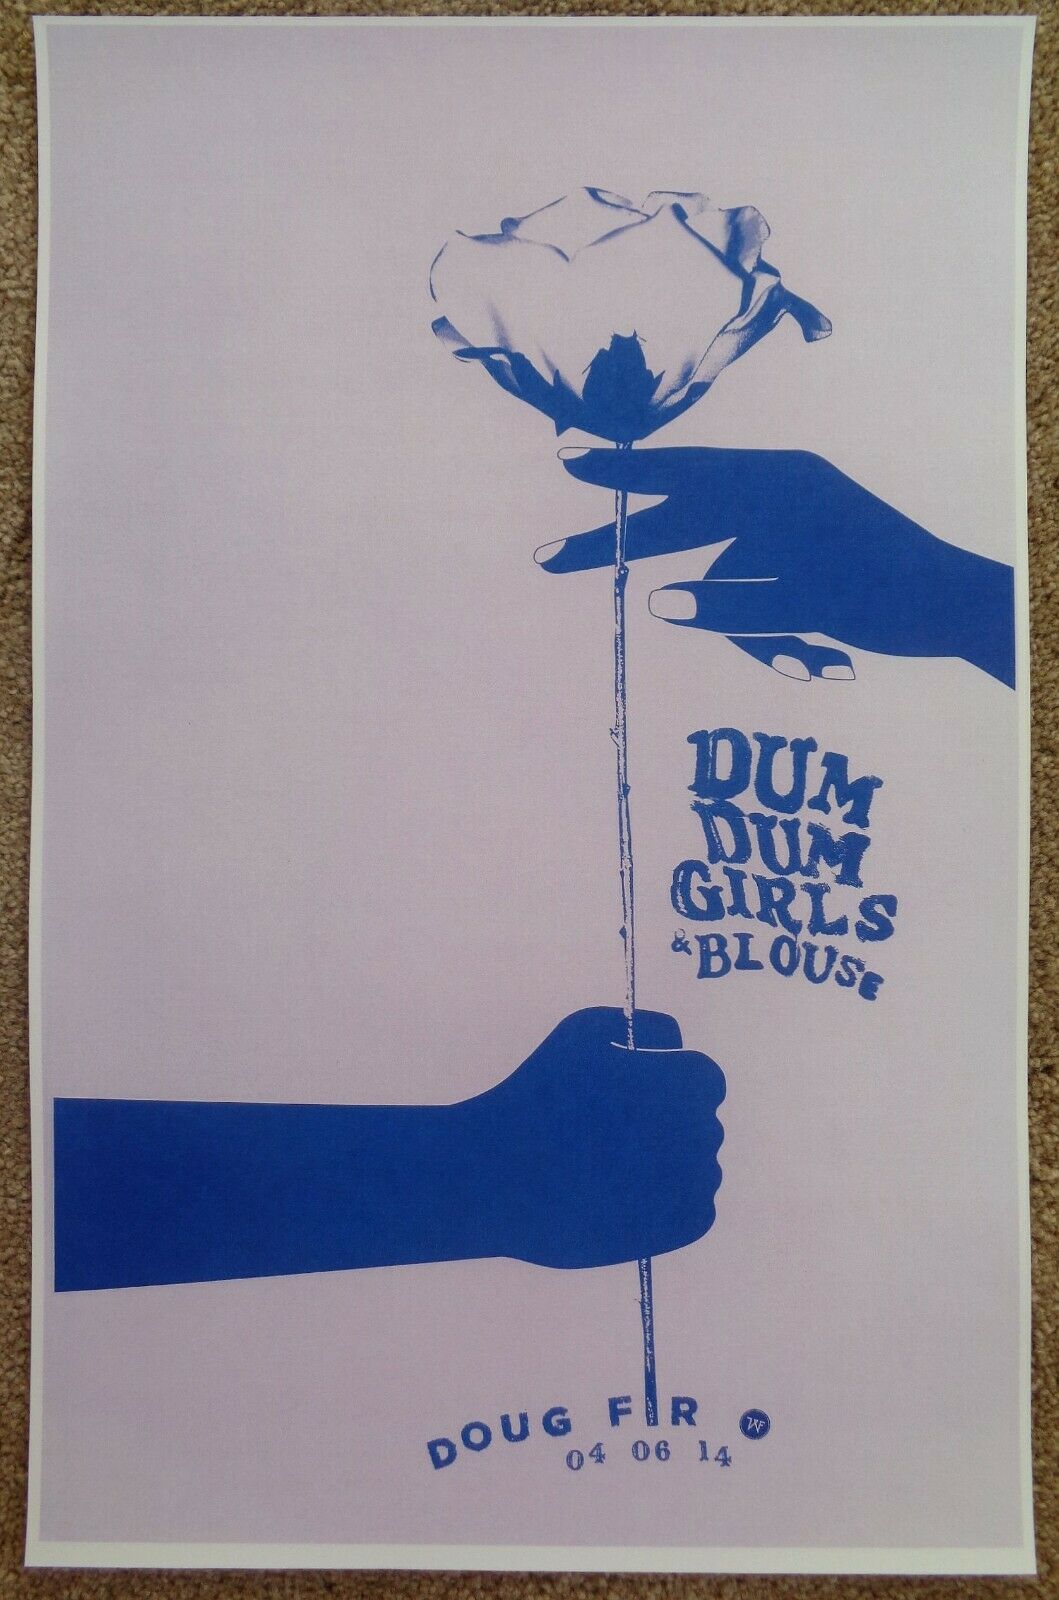 Dum Dum Girls 2014 Poster Gig Portland Oregon Concert